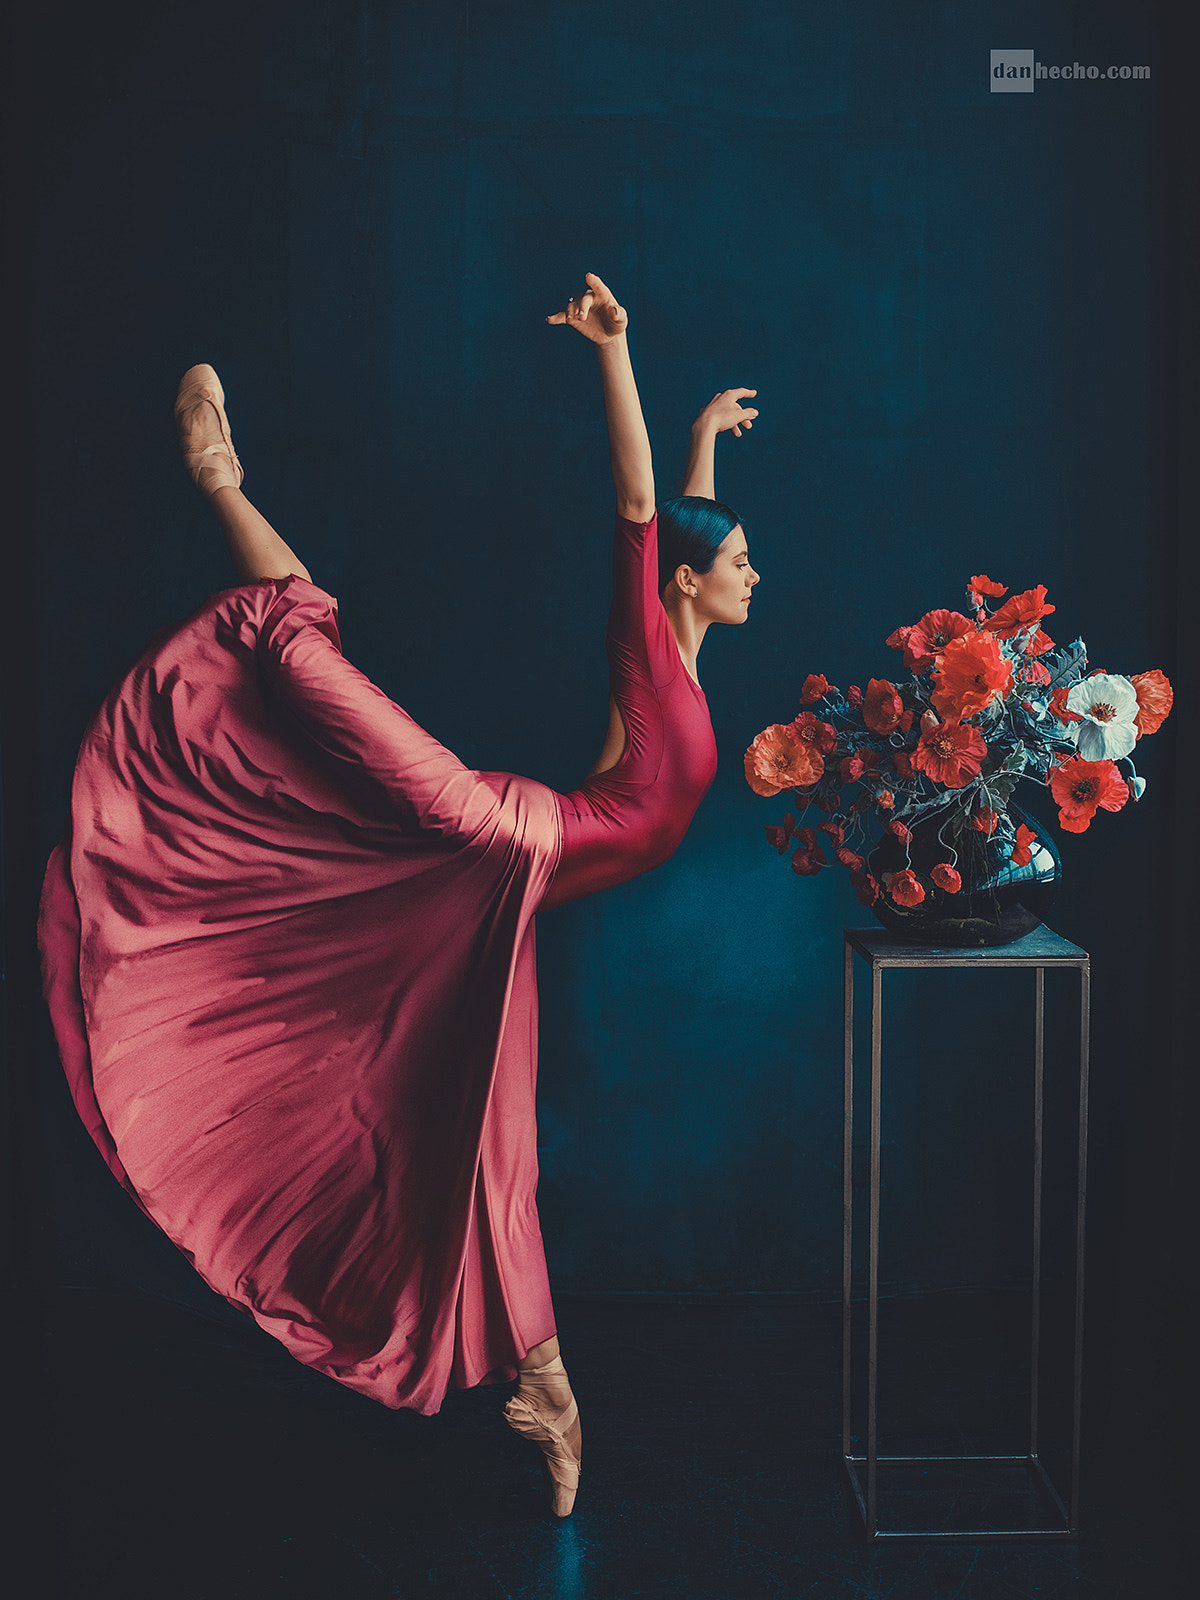 Ballerina Ballet Slippers Flowers Plants Women Dancer Dan Hecho Portrait Display Tiptoe 1200x1600